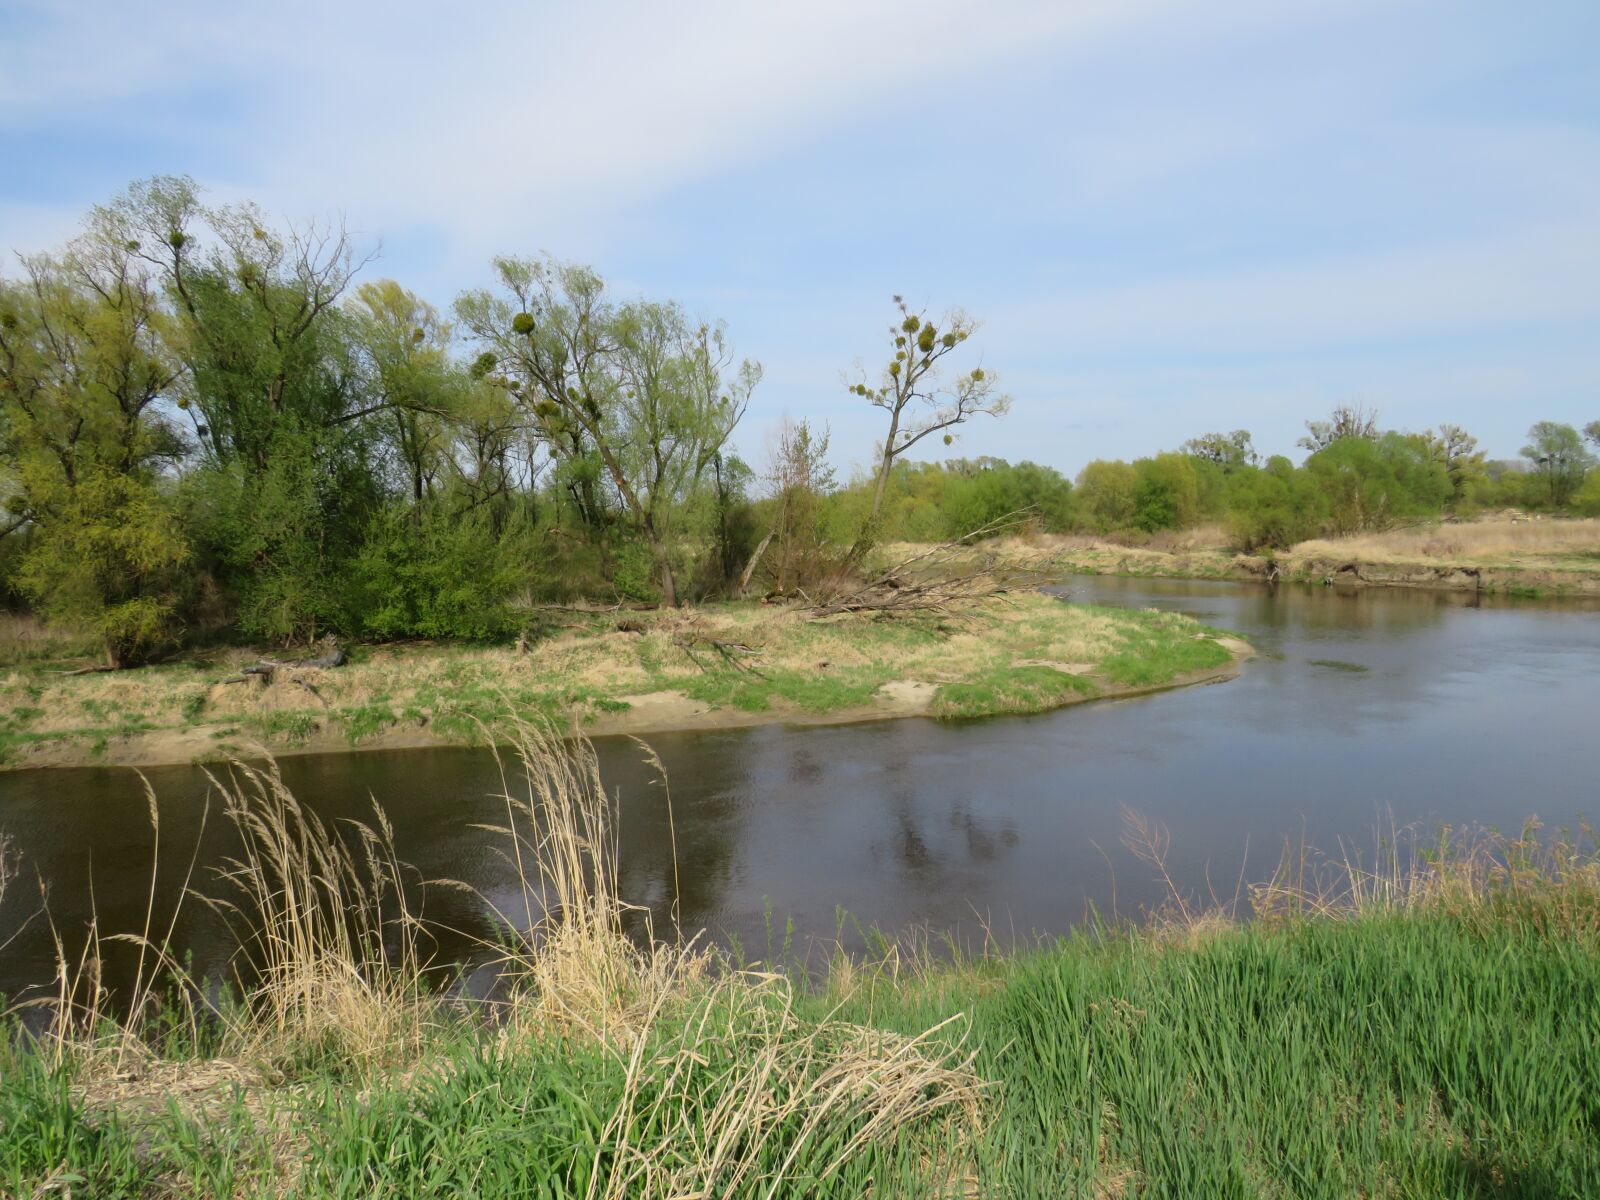 Canon PowerShot SX540 HS sample photo. River, landscape, nature photography